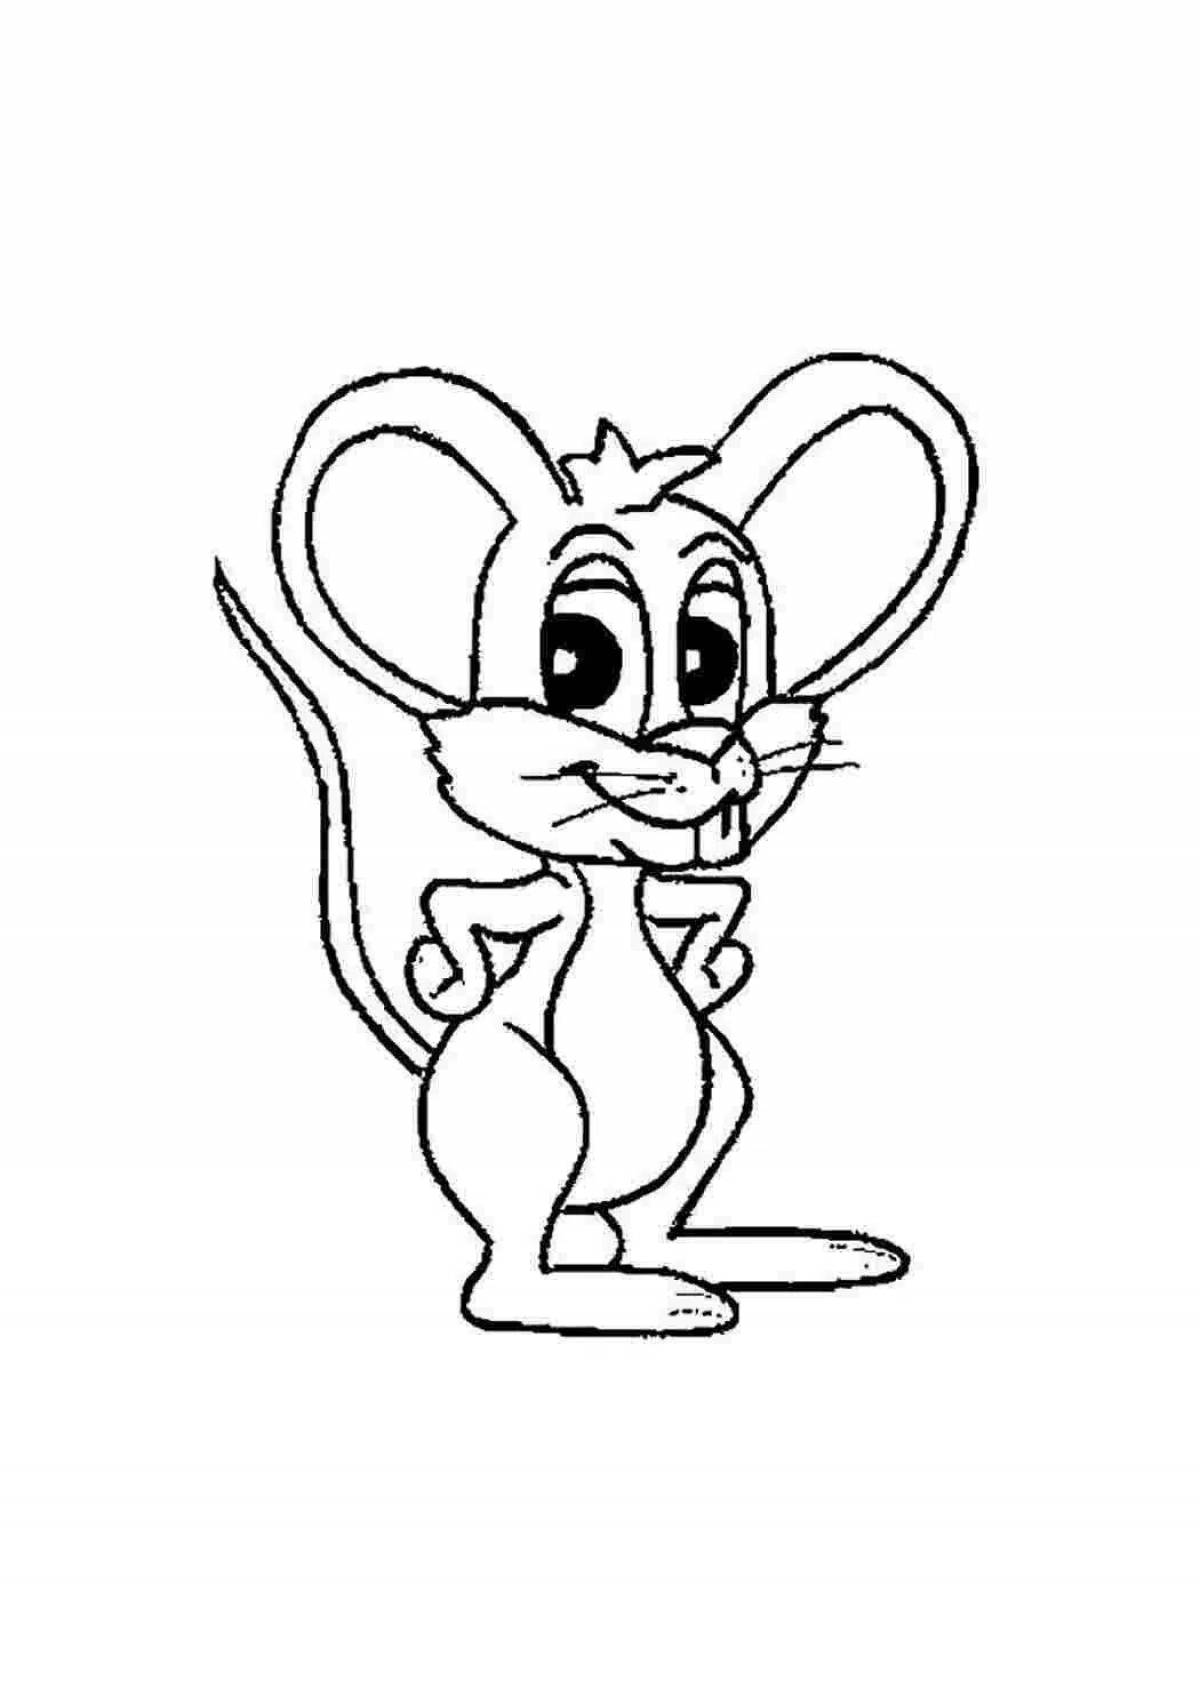 Раскраска мышь распечатать. Раскраска мышка. Мышь раскраска для детей. Мышонок раскраска для детей. Мышка для раскрашивания детям.